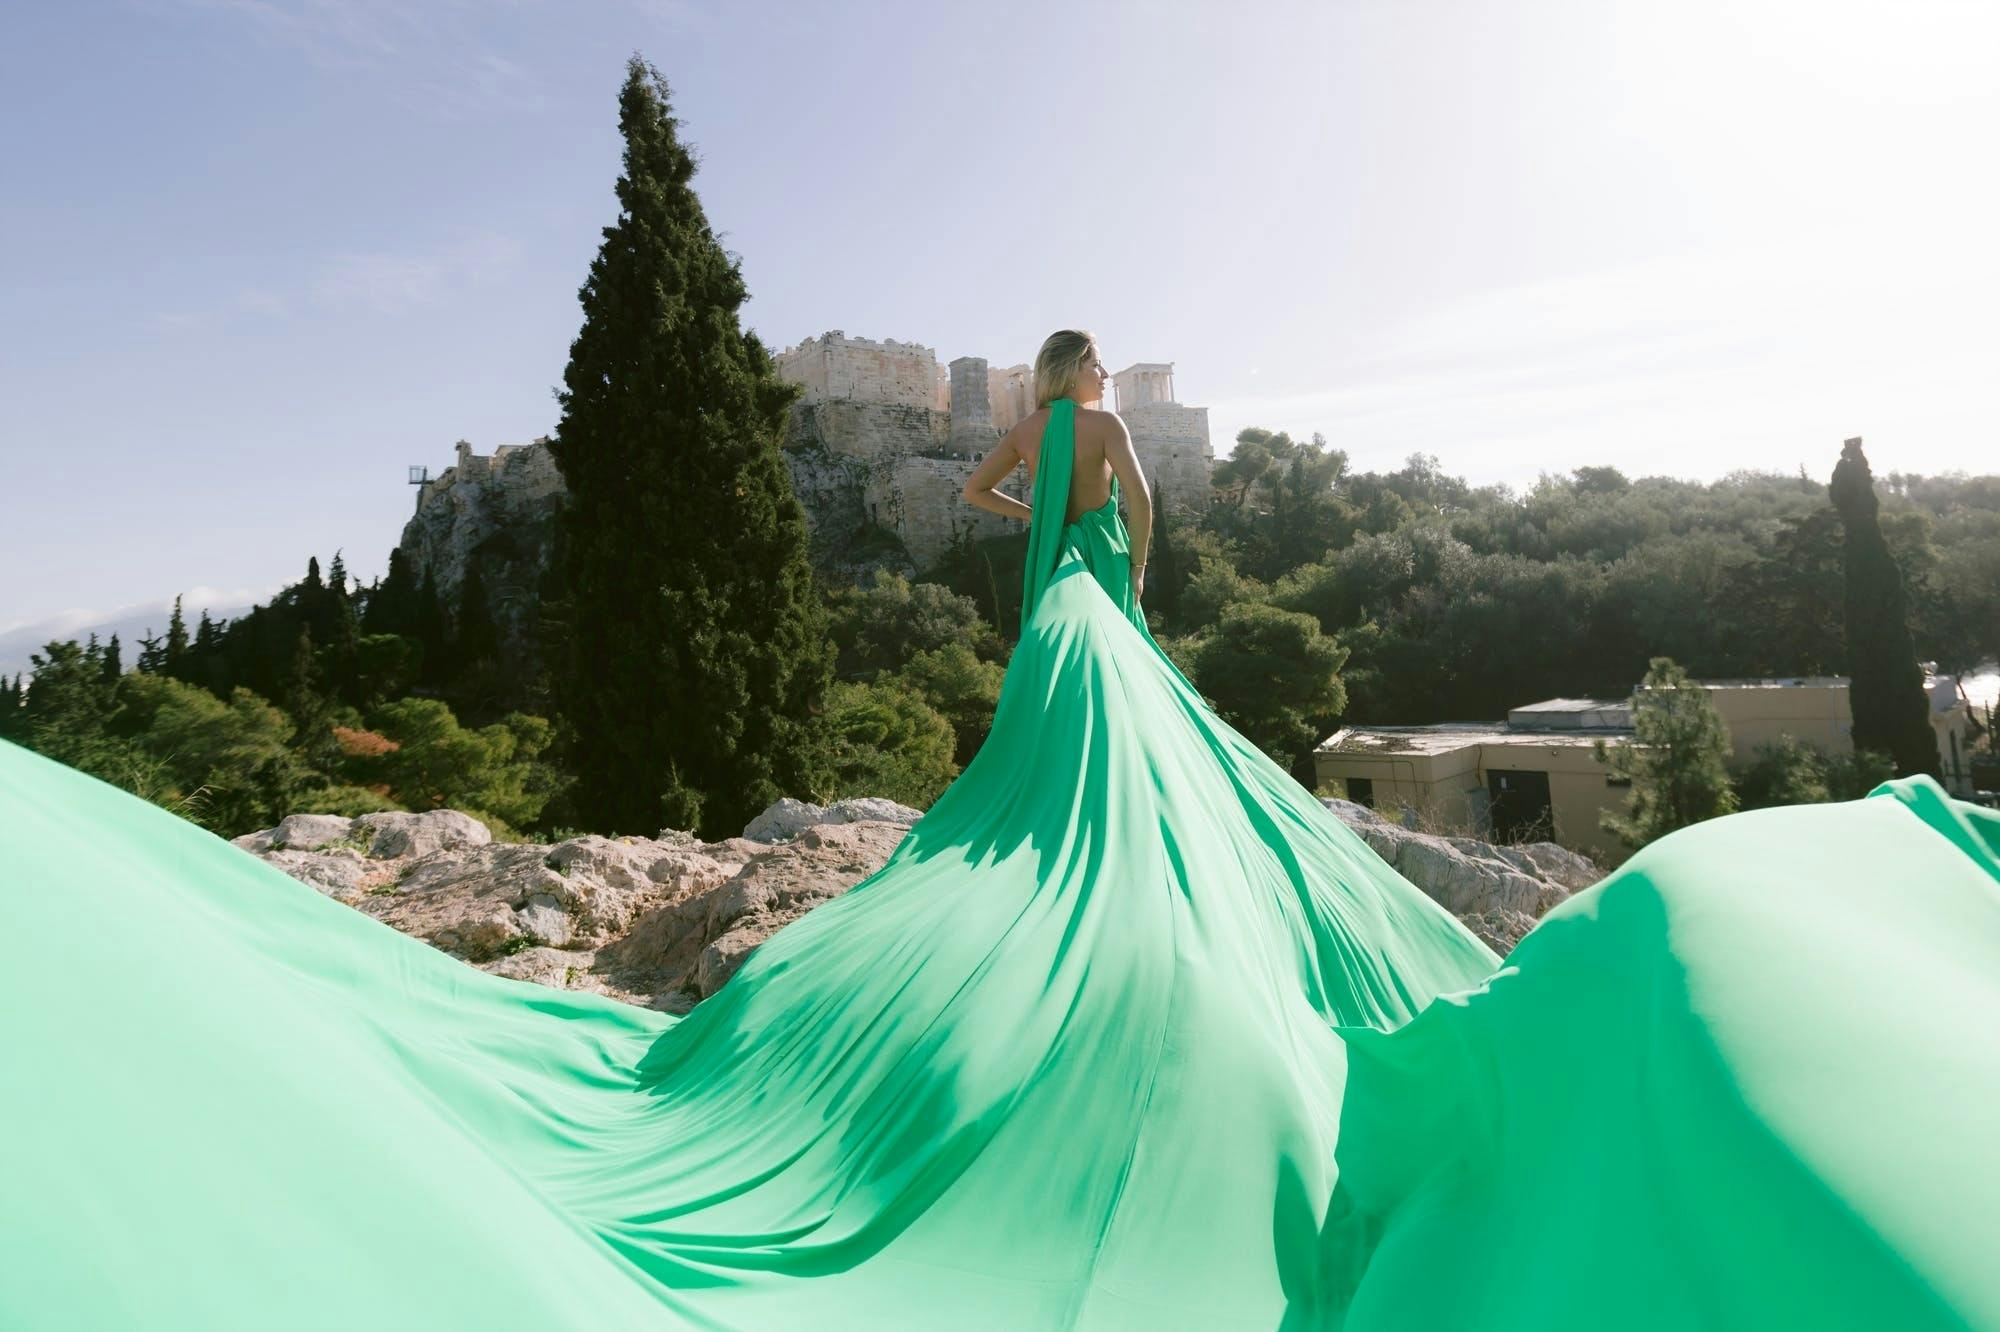 Sesja zdjęciowa latającej sukienki w Atenach z profesjonalnym fotografem